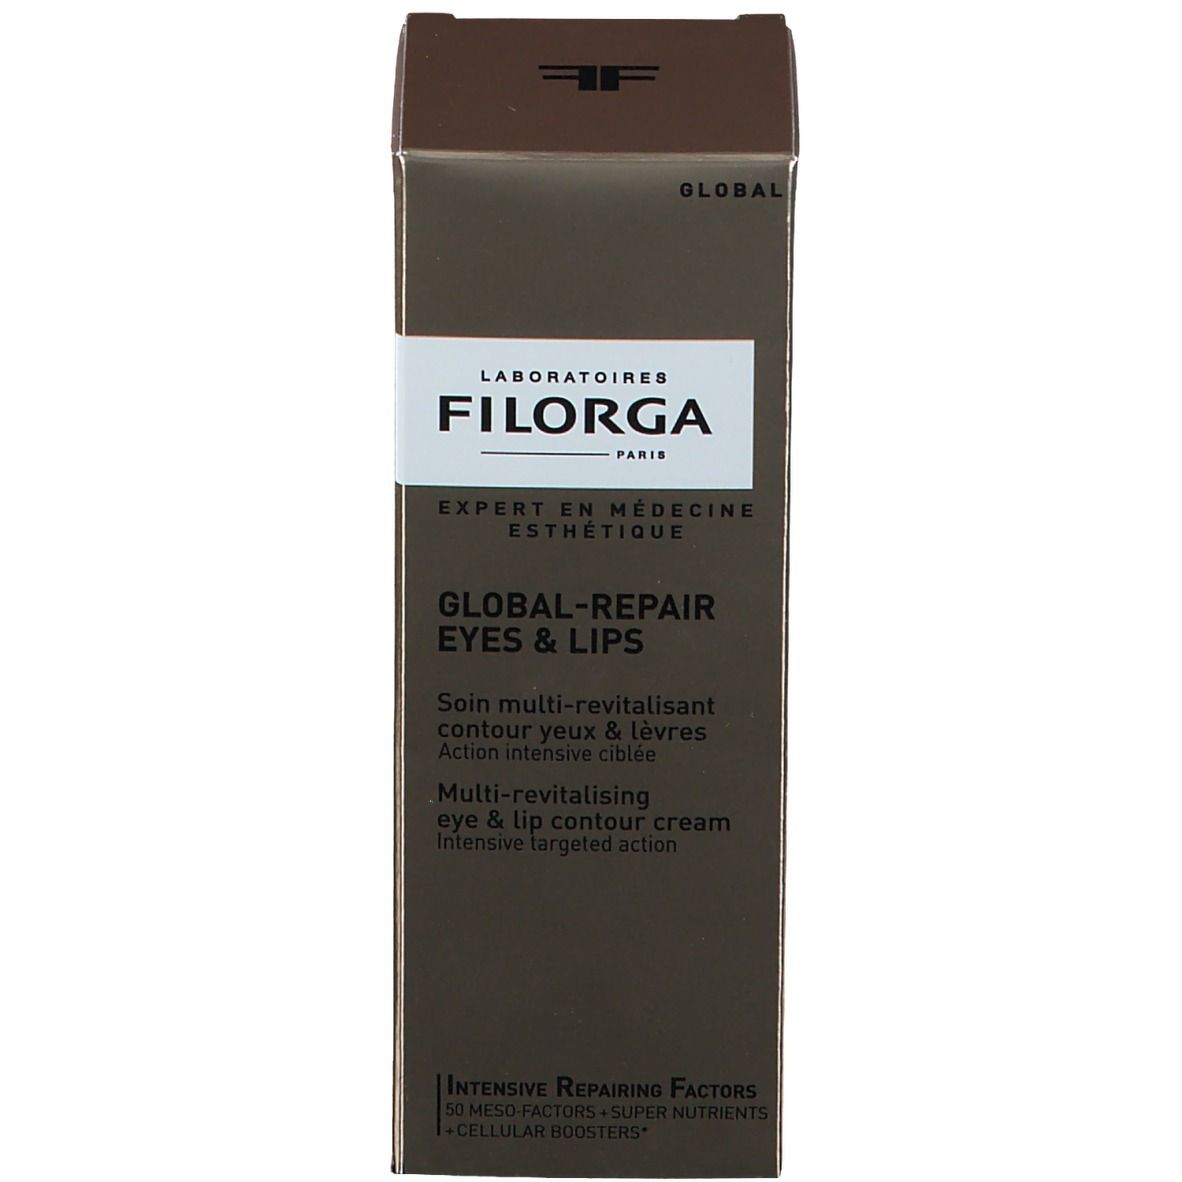 FILORGA Global-Repair Eyes and Lips